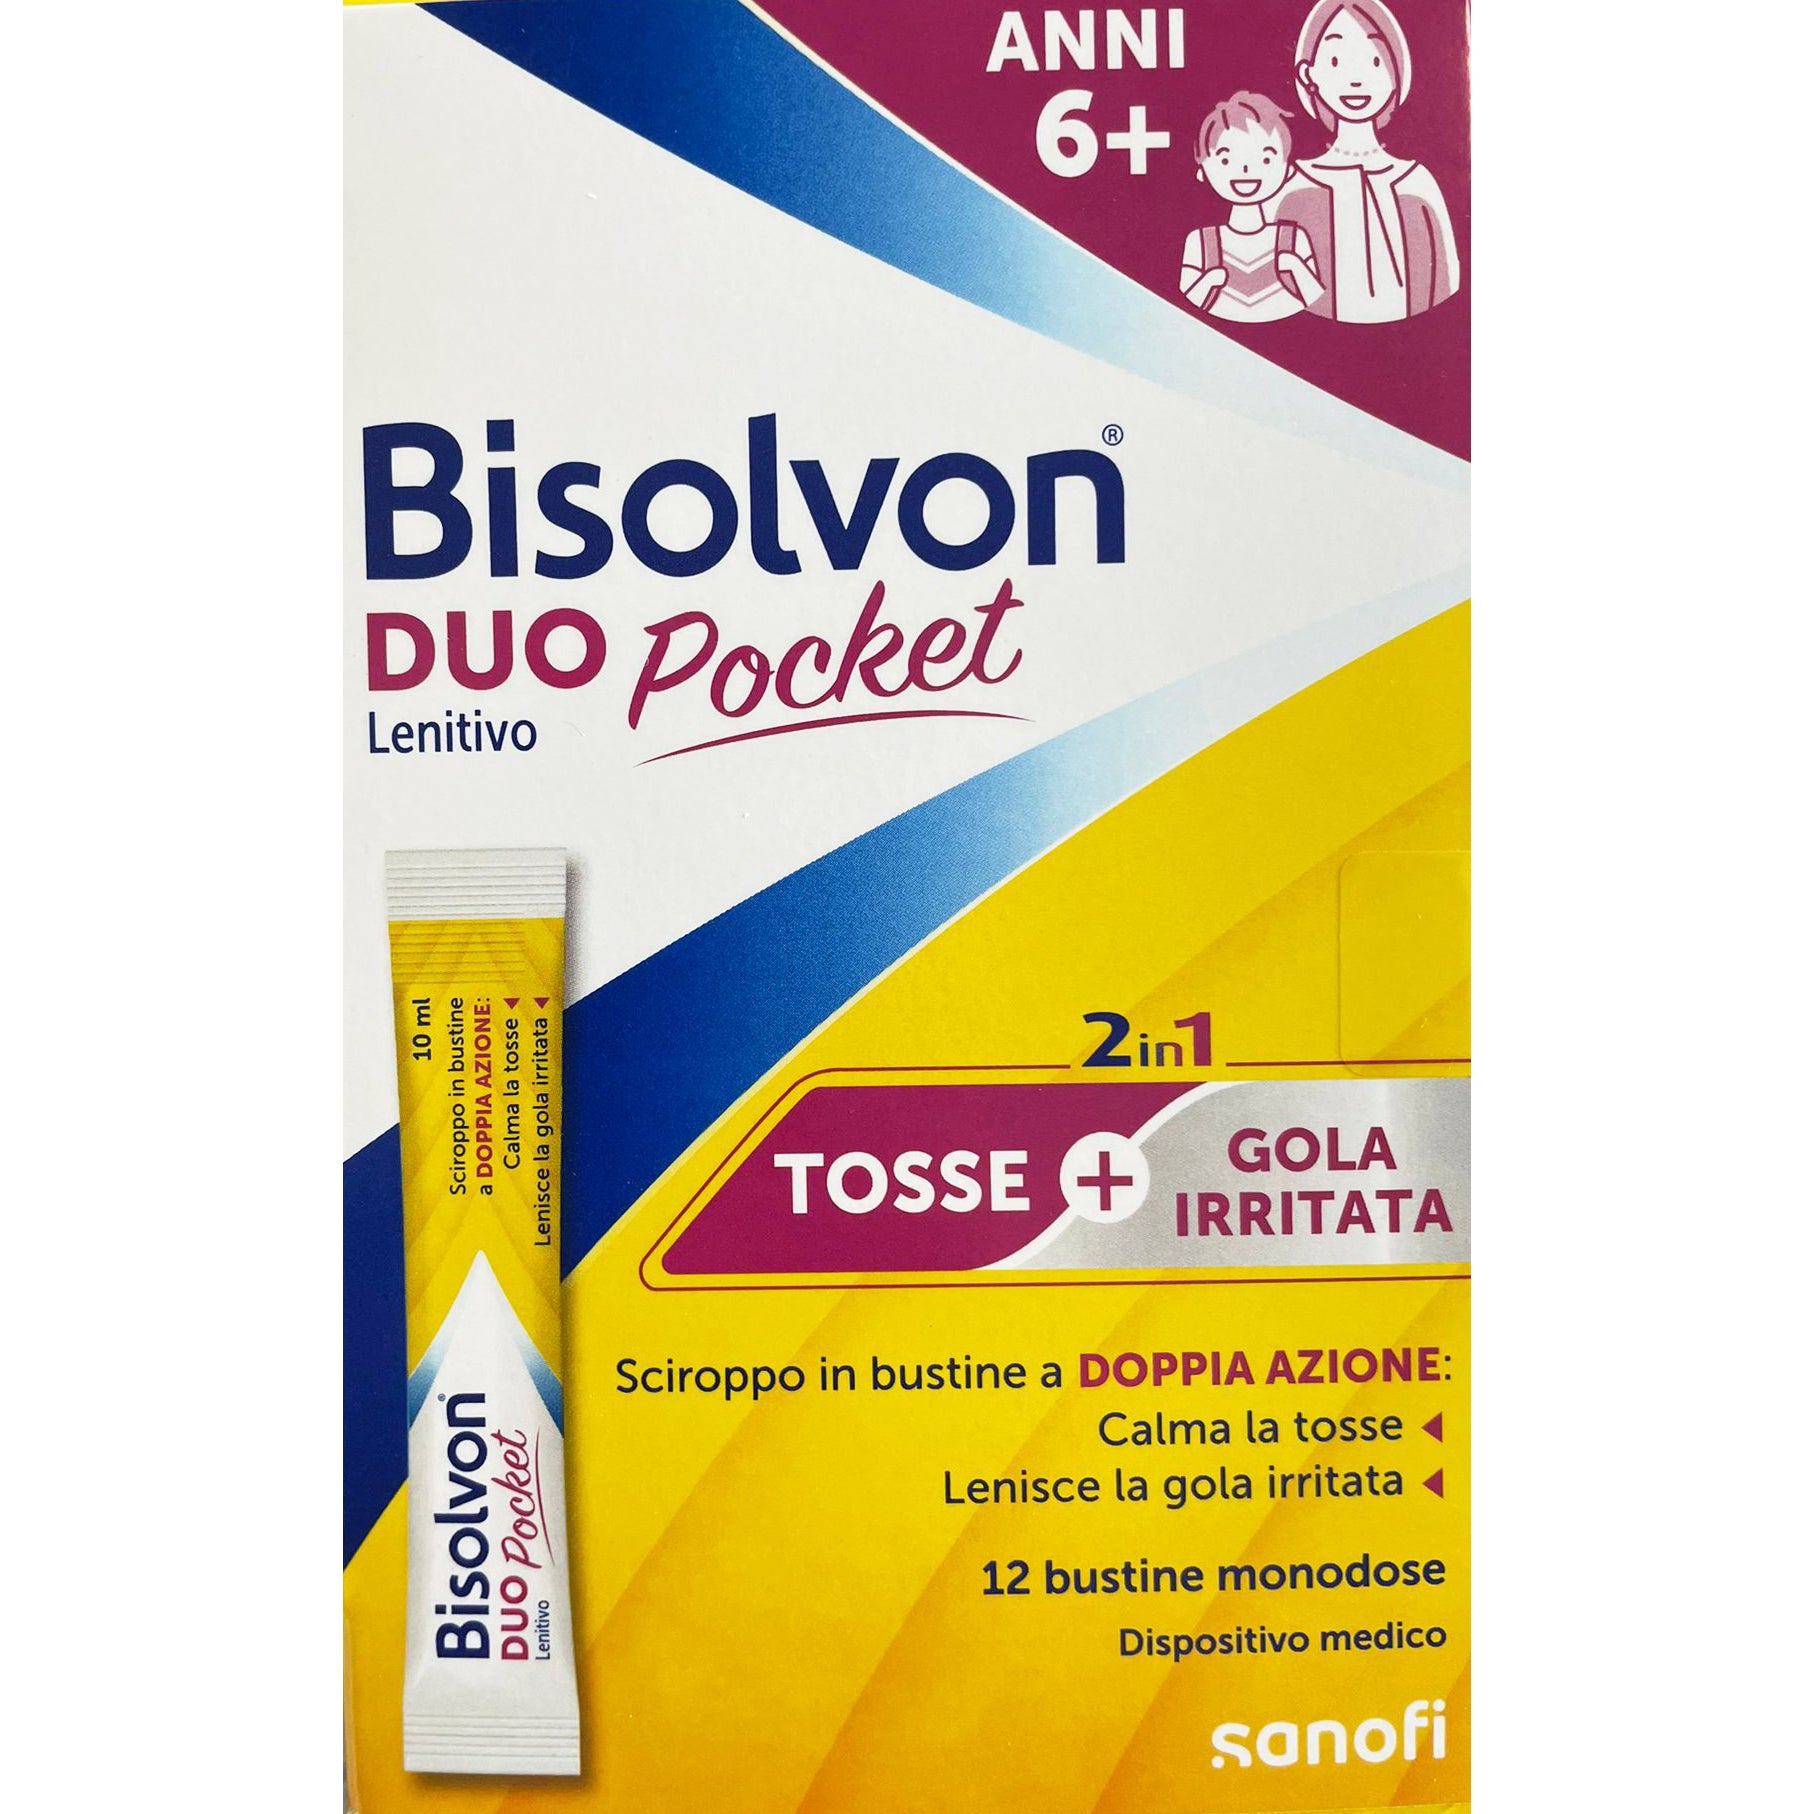 Bisolvon Duo Pocket Lenitivo 12 Bustine Monodose